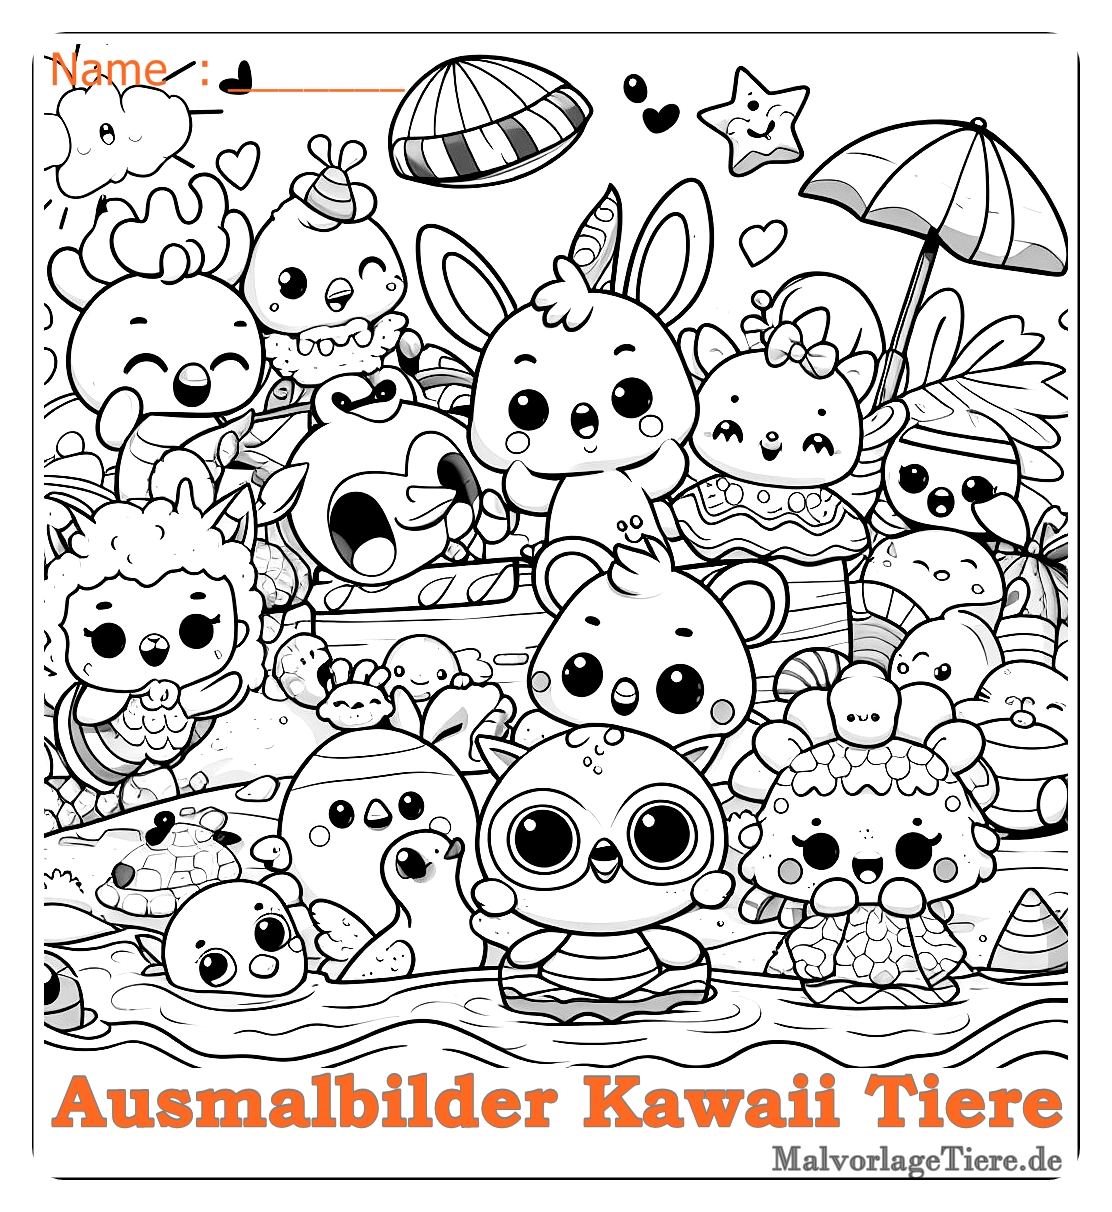 Süß ausmalbilder kawaii tiere 04 by malvorlagetiere.de